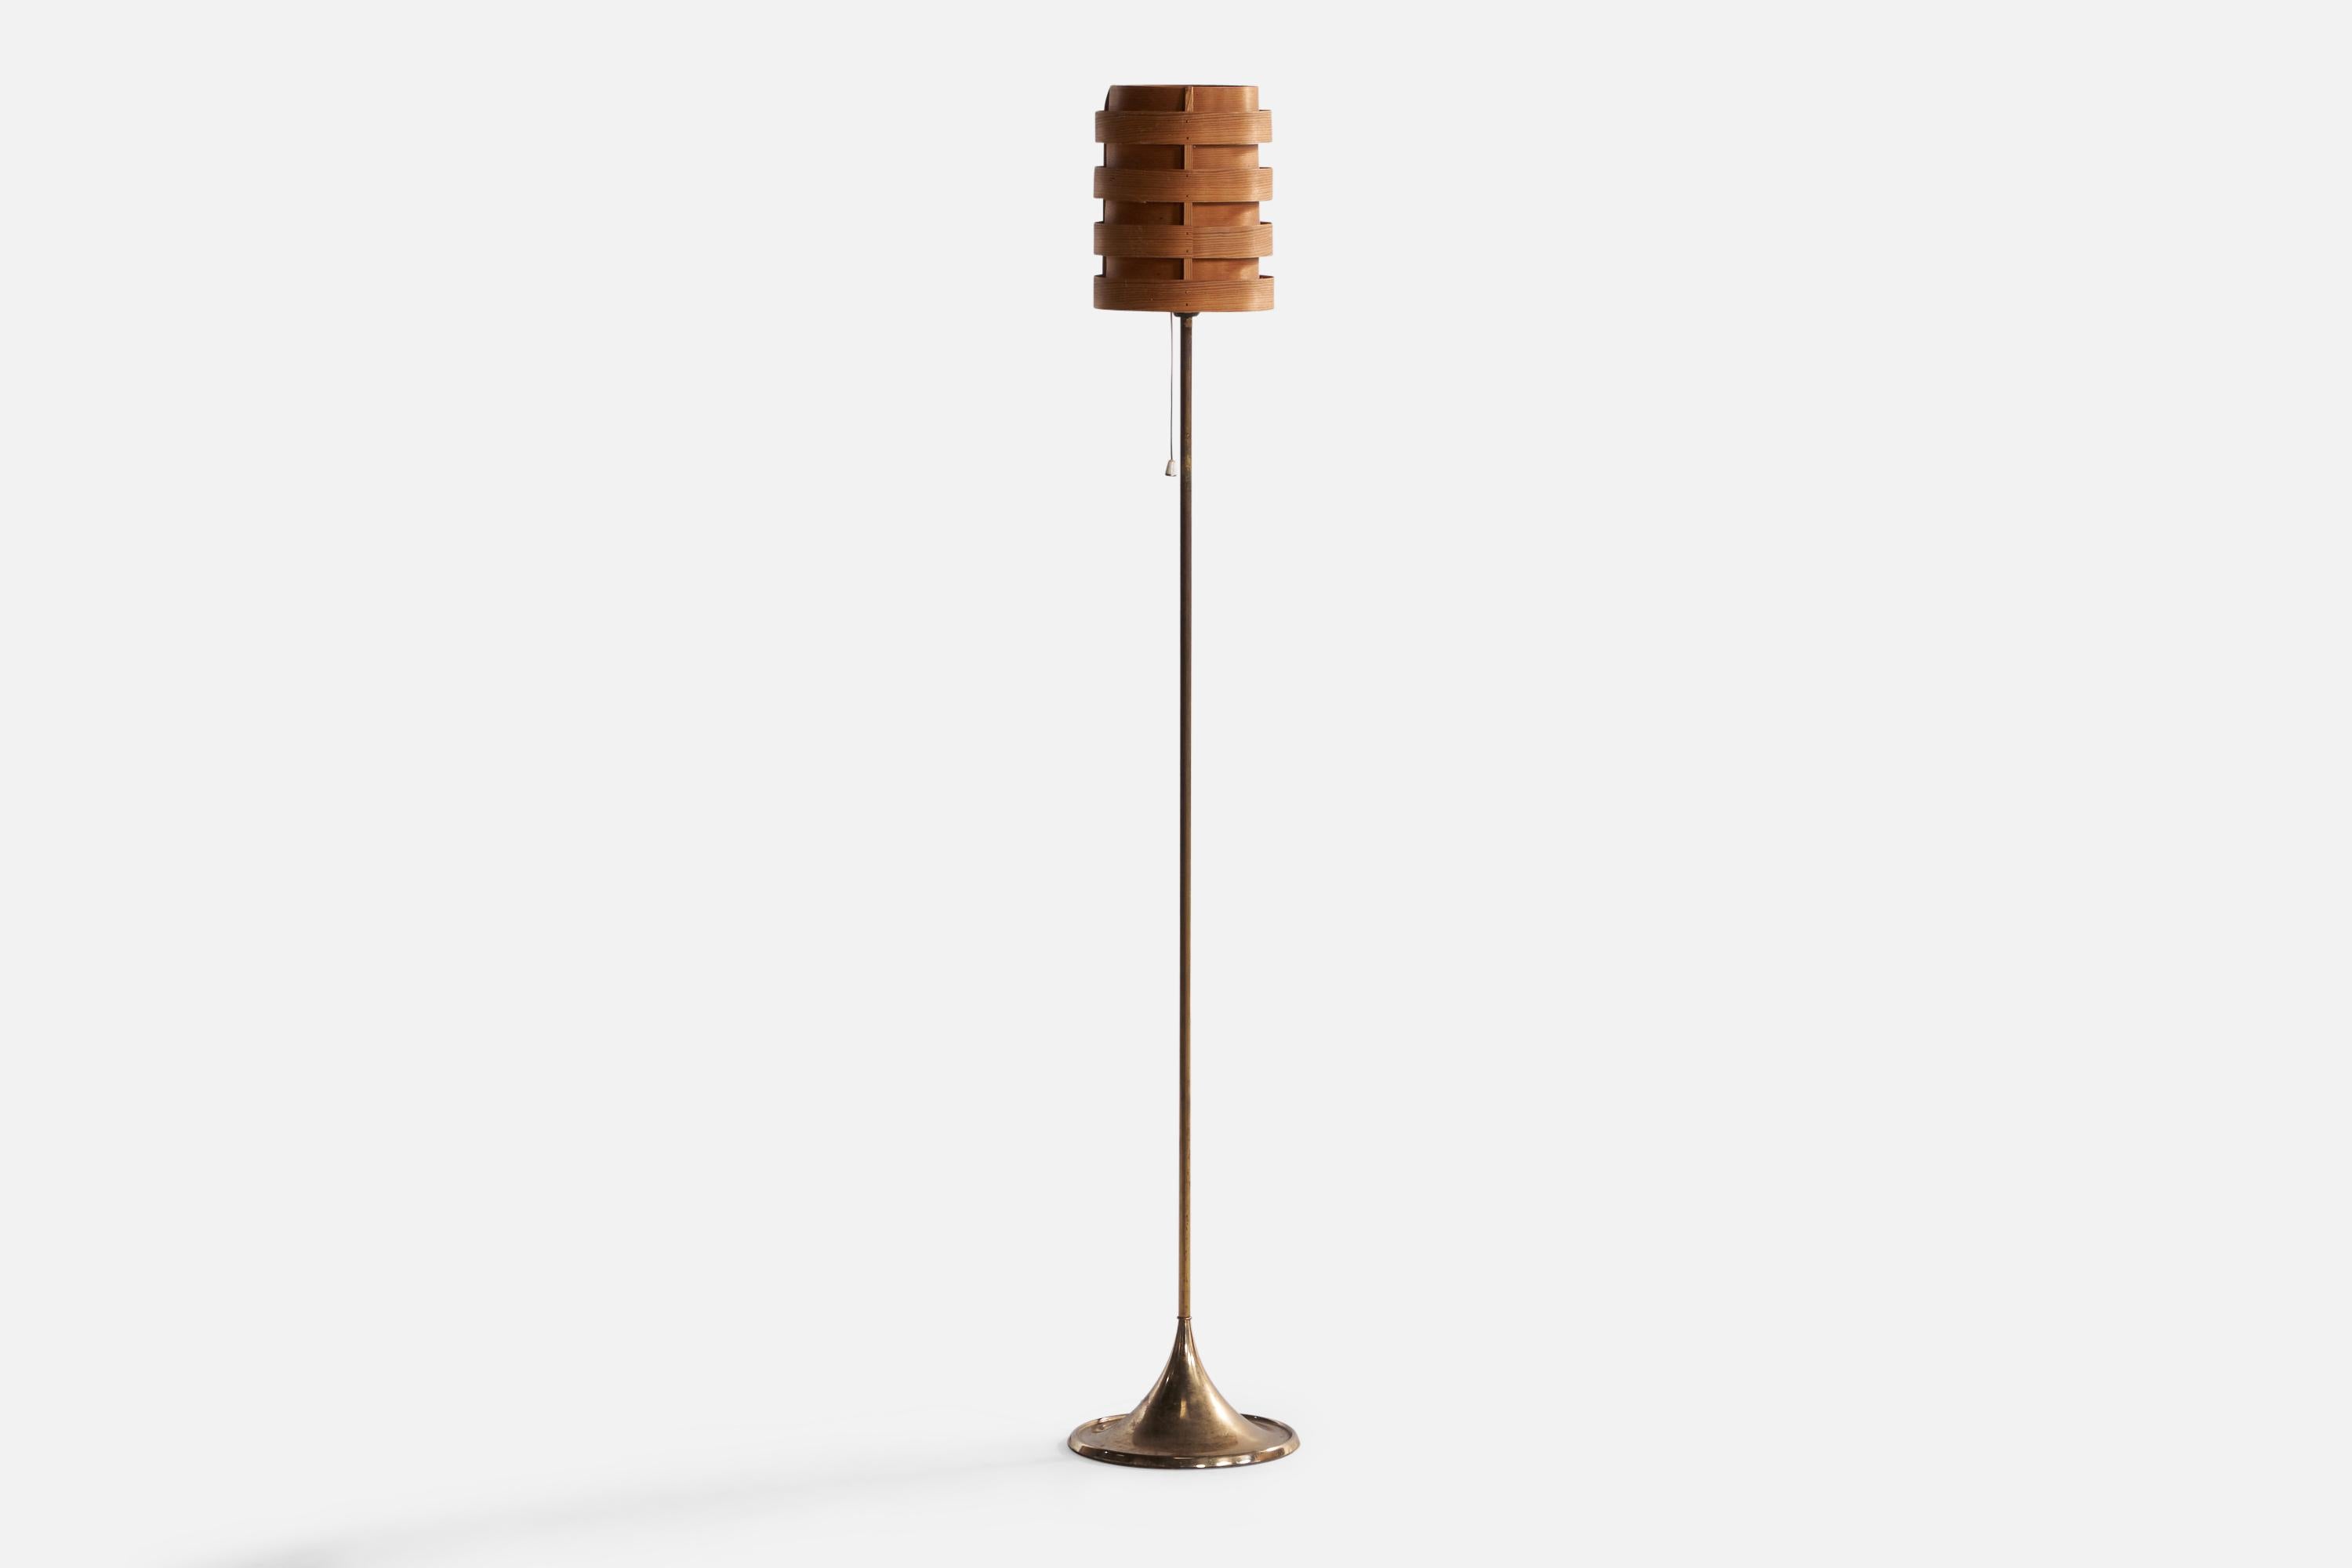 Stehleuchte aus Messing und geformtem Kiefernfurnier, entworfen und hergestellt in Schweden, 1960er Jahre.

Sortierter Vintage-Lampenschirm, entworfen von Hans-Agne Jakobsson.

Gesamtabmessungen (Zoll): 44,5